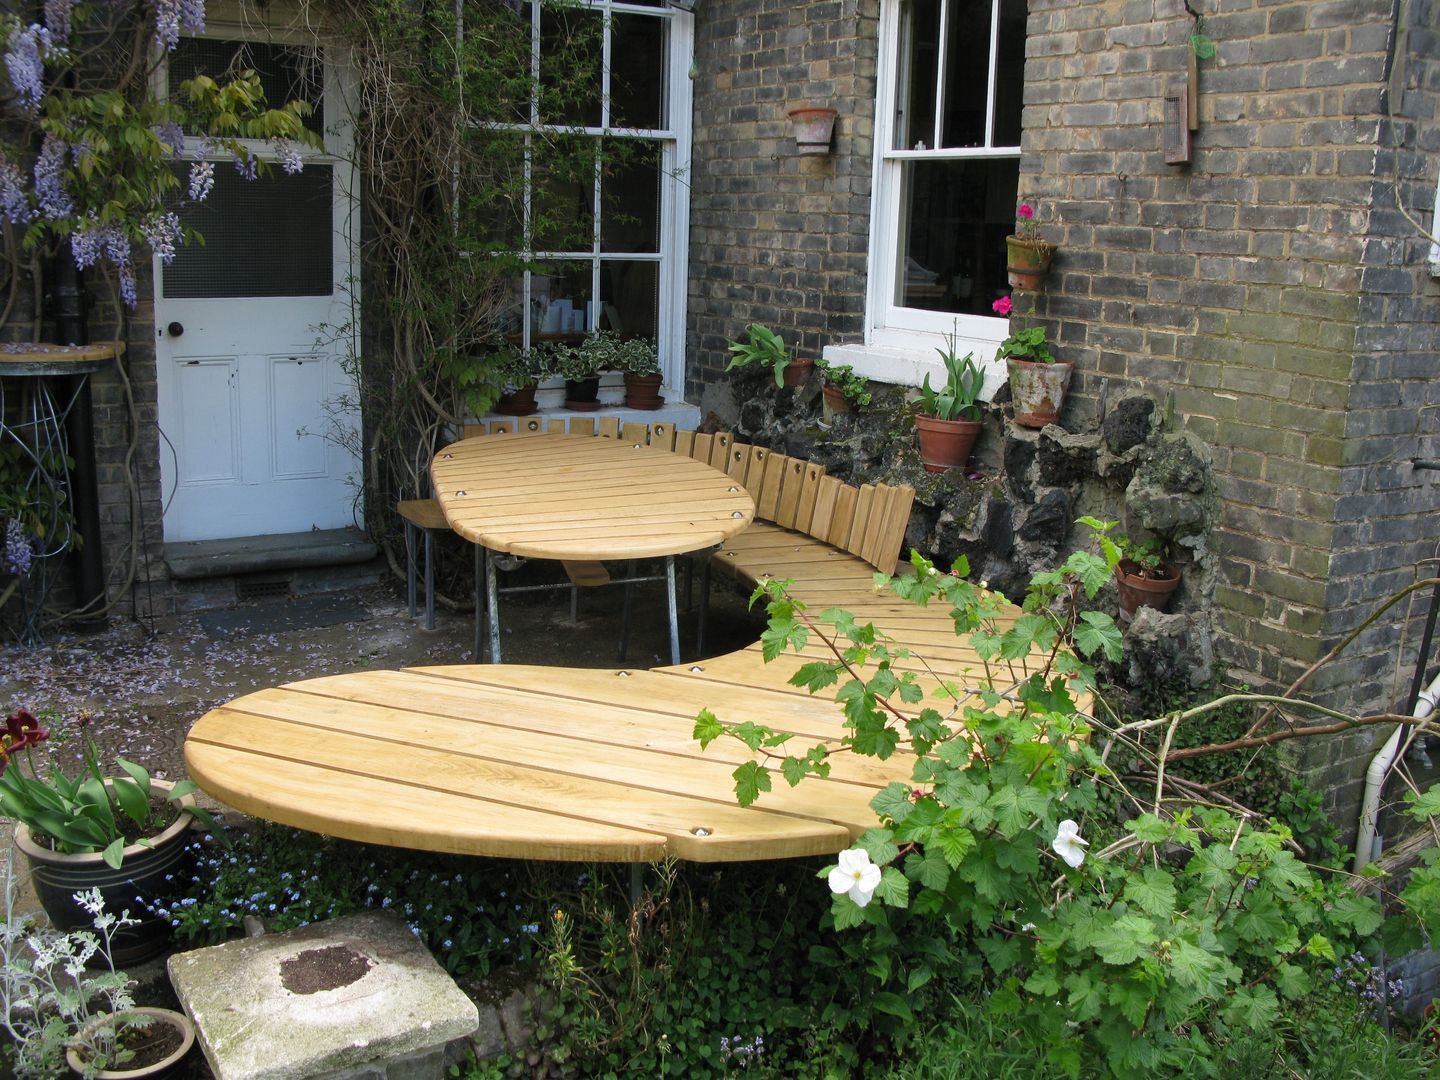 garden dining table and bench, tim germain furniture designer/maker tim germain furniture designer/maker Taman Gaya Eklektik Furniture